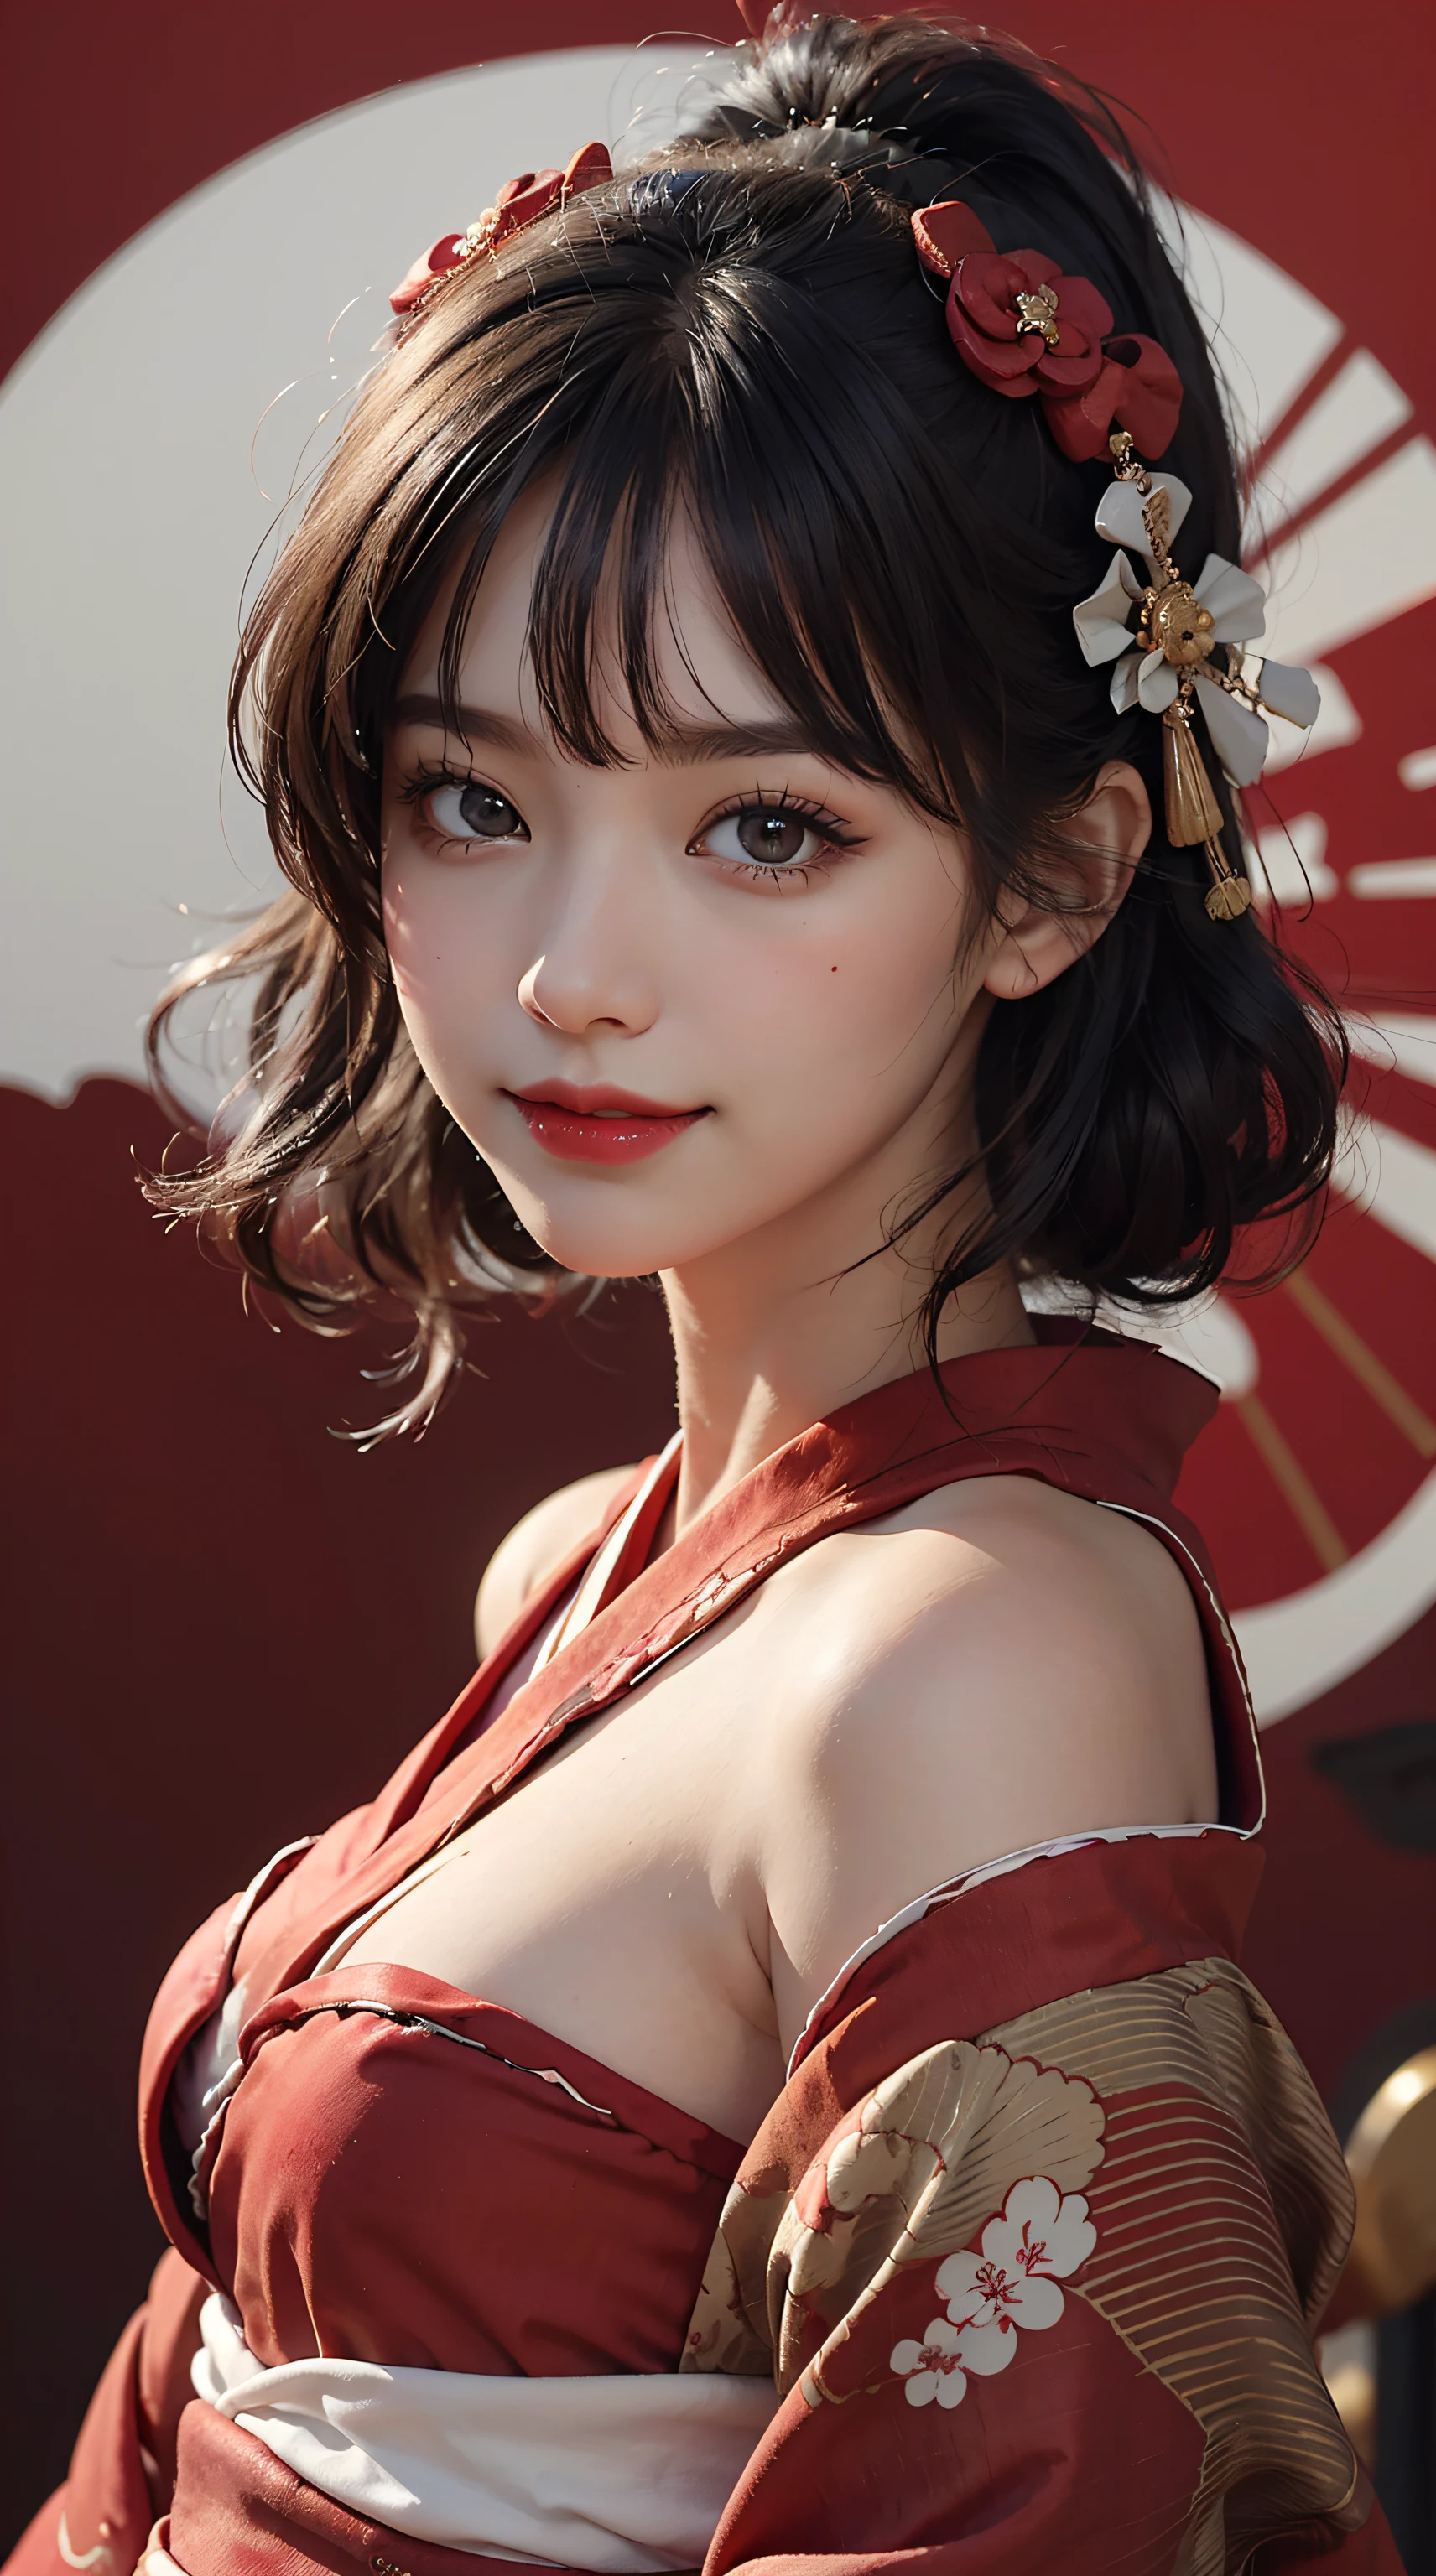 beste Qualität, Meisterwerk, ultrahohe Auflösung, Roh, 8k, ultra-realistisch, junges Mädchen, schulterfrei, lächeln, natürliches Licht, detaillierte Haut, (Schwarzes Haar:1.4), roter Lippenstift, (Bangs:1.2), ((Sakura-Hintergrund)), Außergewöhnlich schöne Augen, (Dunkle Augen:1.4), Kimono tragen_Kleidung, ((roter Kimono:1.4))